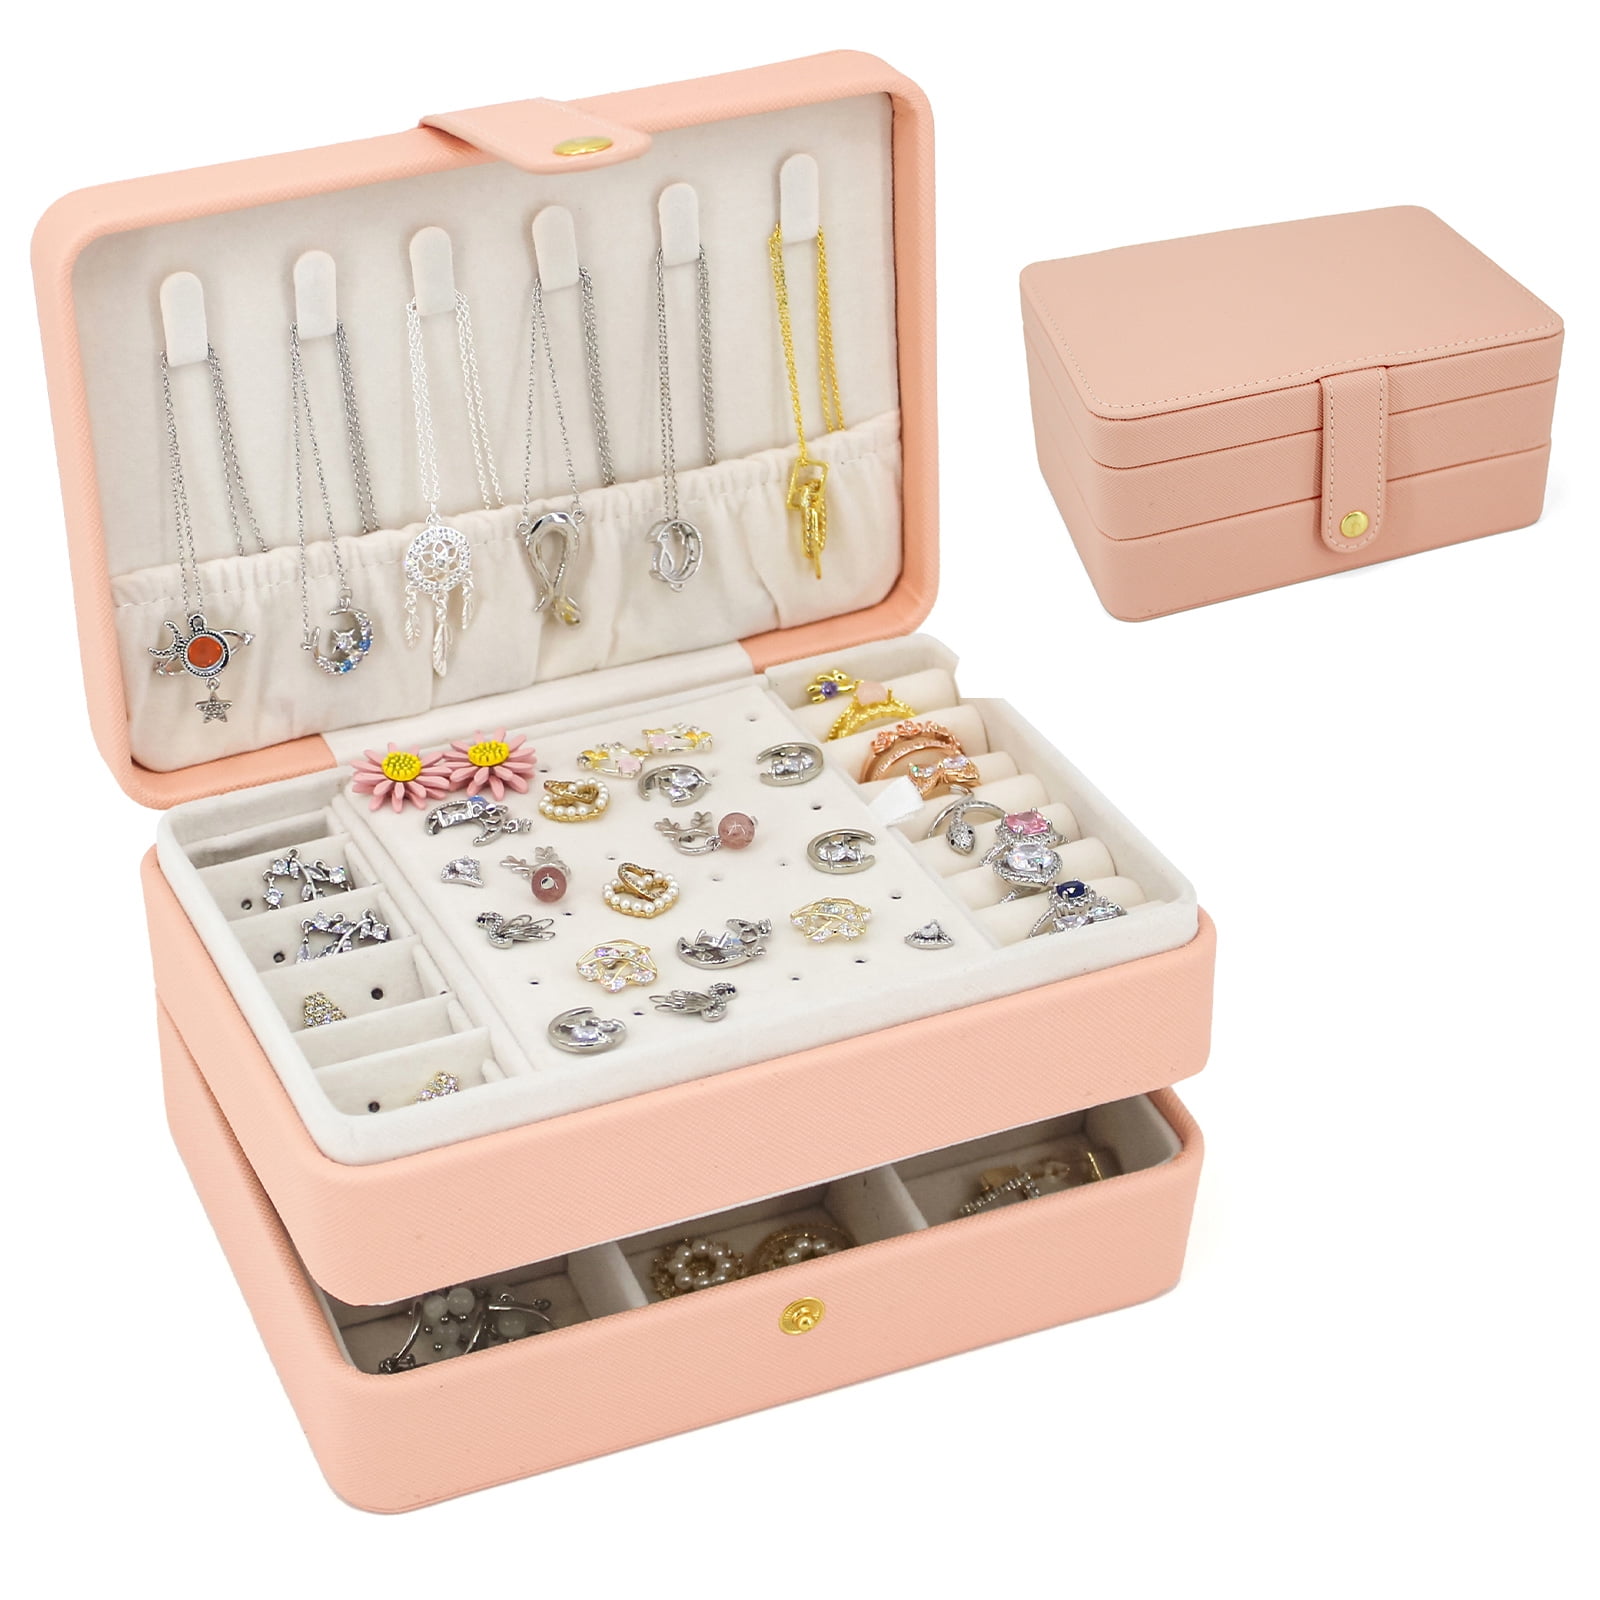 Small jewelry box - Black | Small jewelry box, Small jewelry, Jewelry  organization